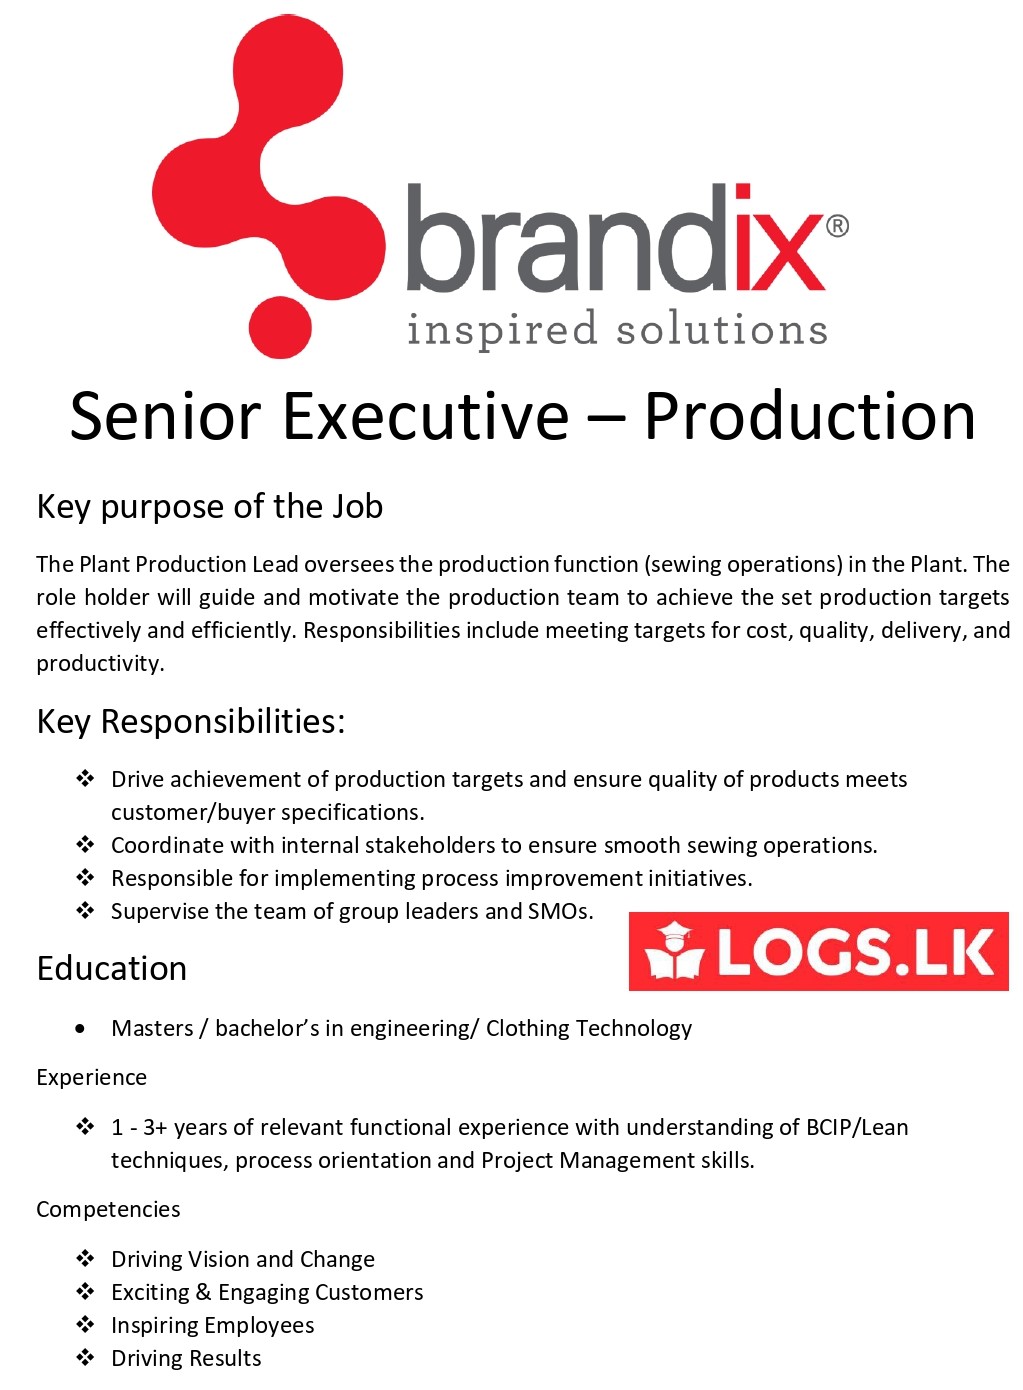 Senior Executive (Production) Job Vacancy - Brandix Sri Lanka Jobs Vacancies Details